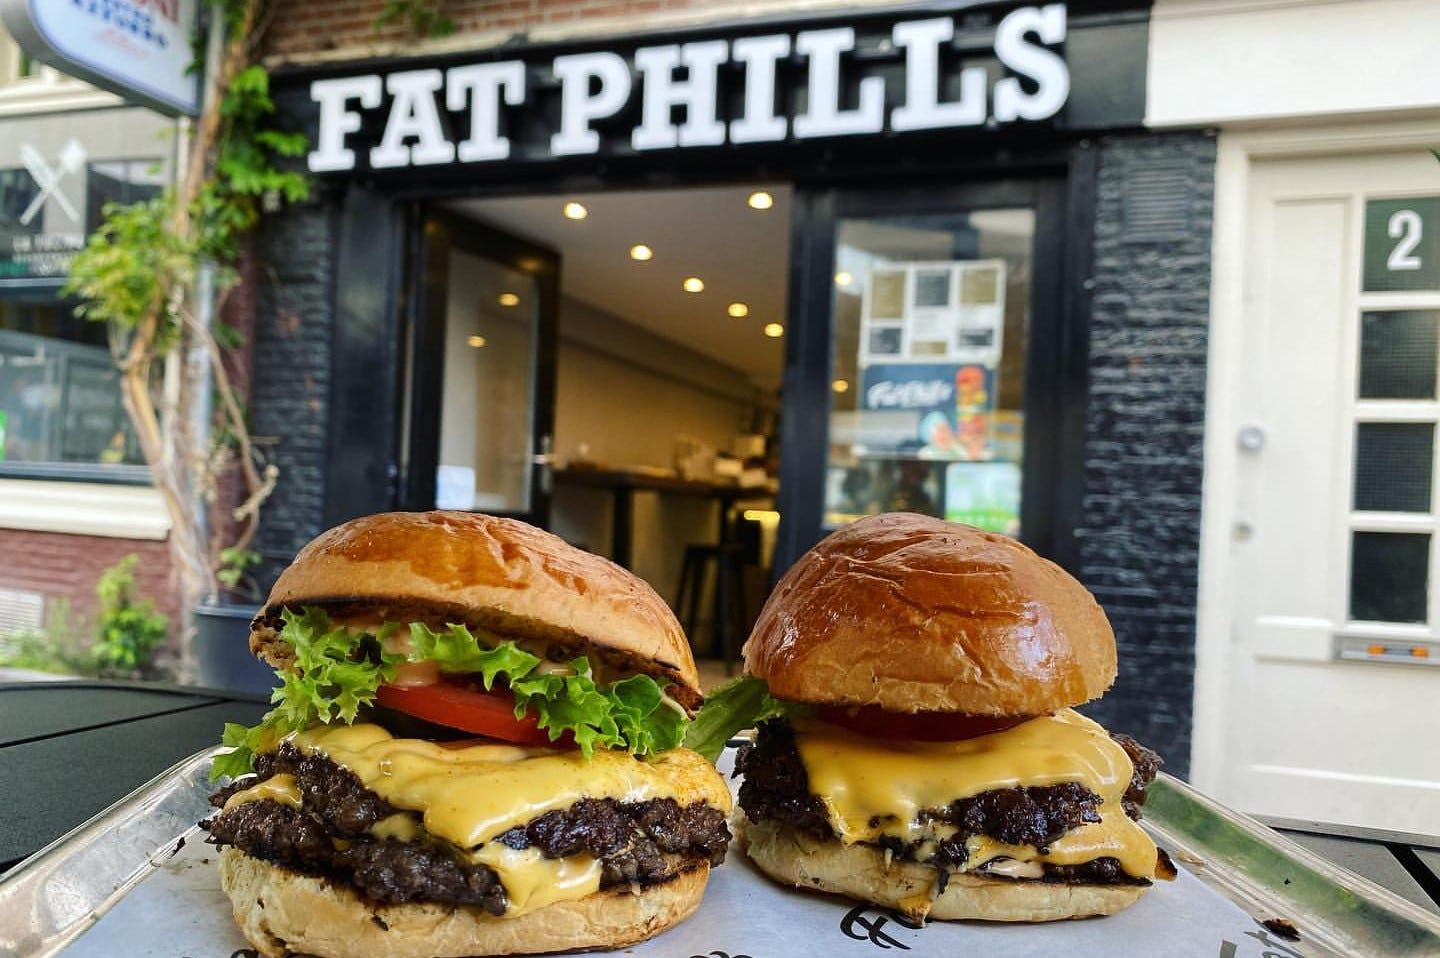 Fat Phill's opent vestiging in Eindhoven